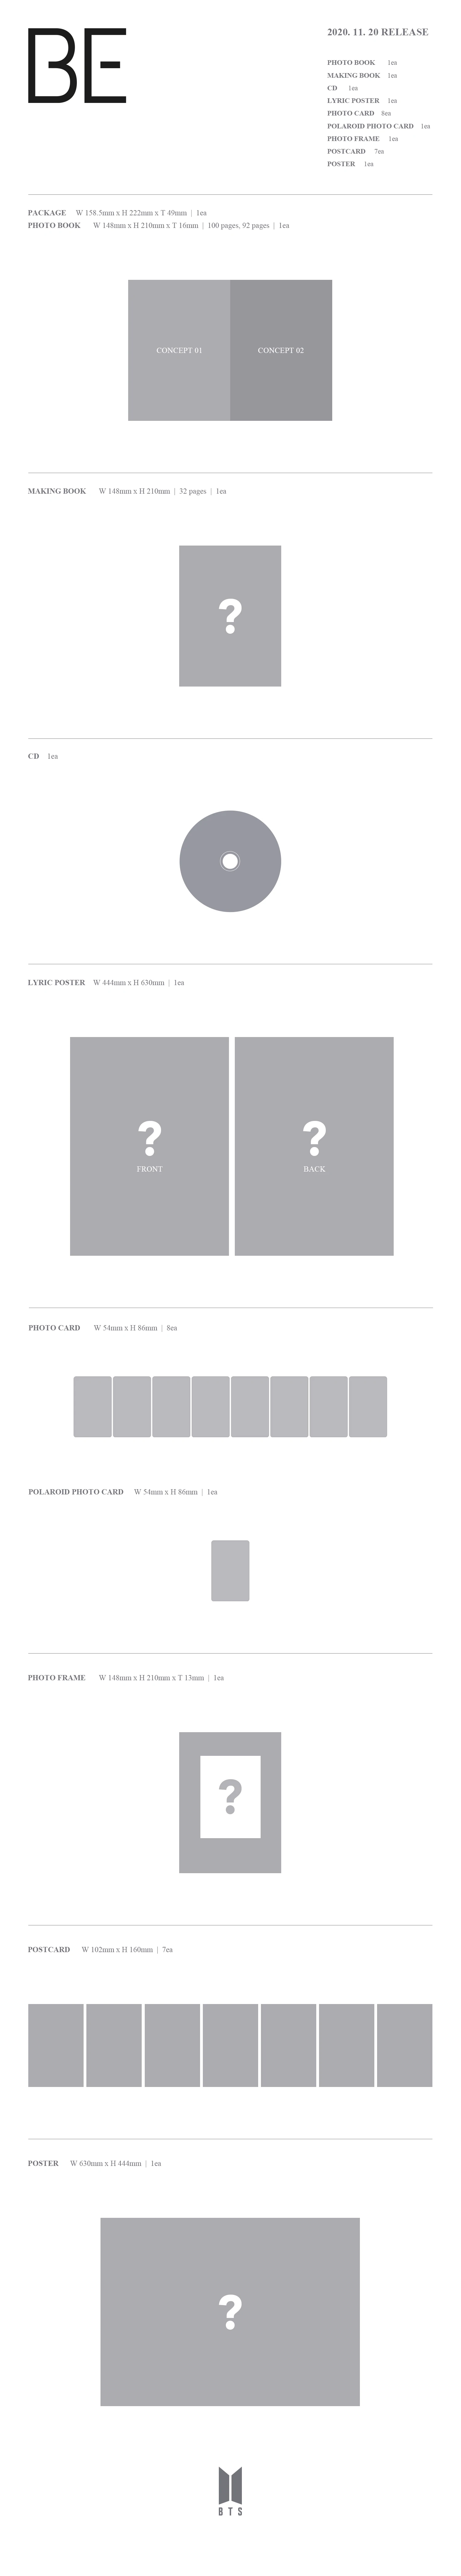 [Επίσημο Kpop]BTS album- BE (Deluxe Edition) Pre-order Wholesale